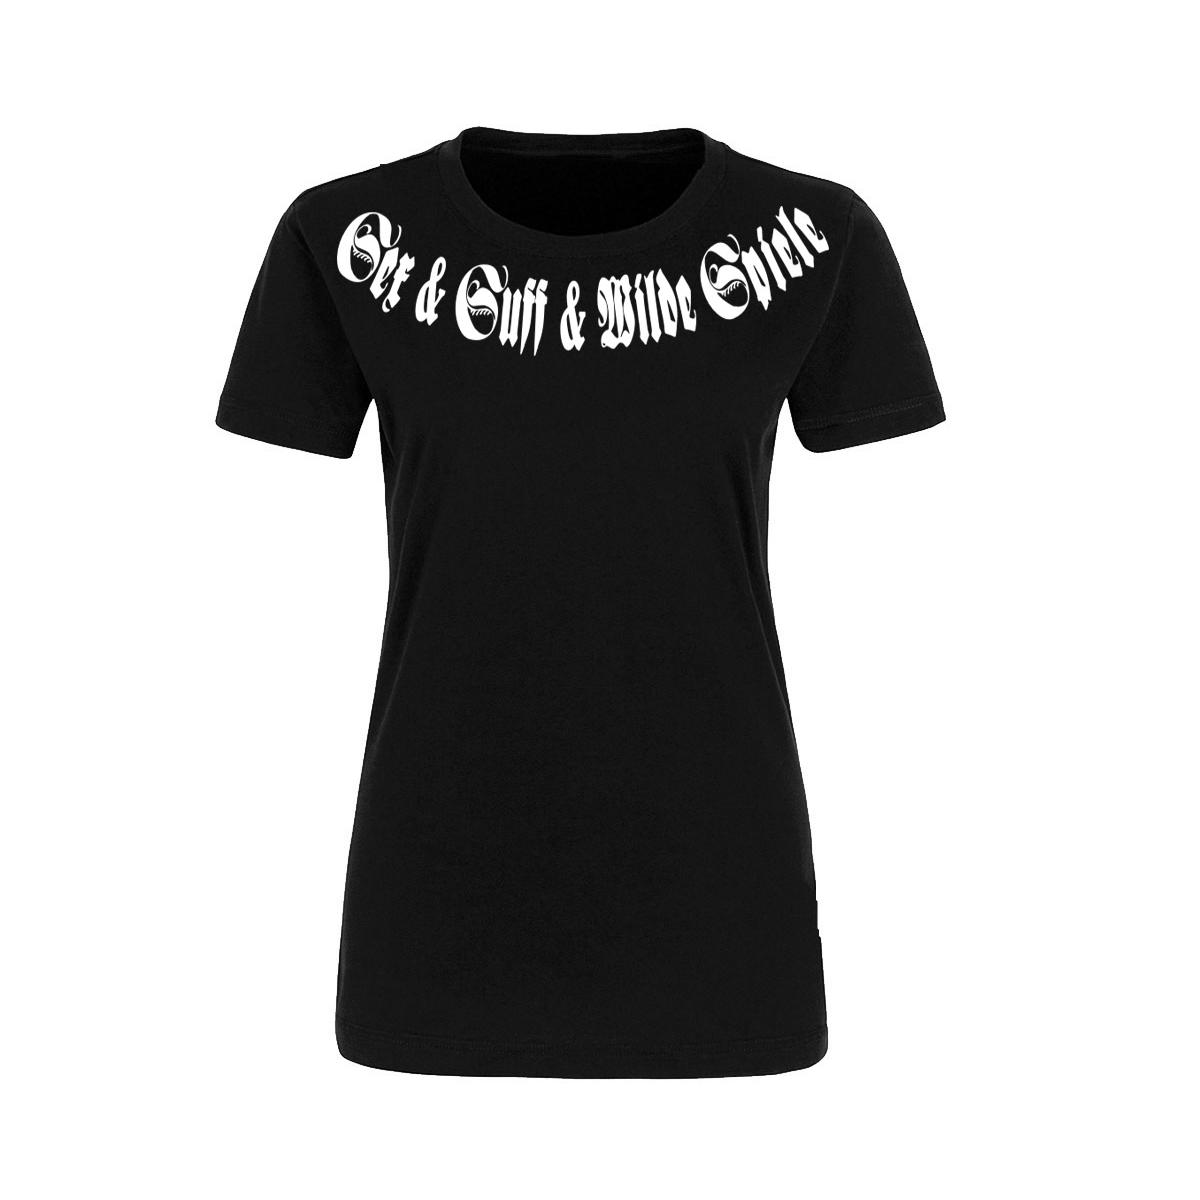 Sex & Suff & Wilde Spiele - Frauen Shirt - schwarz